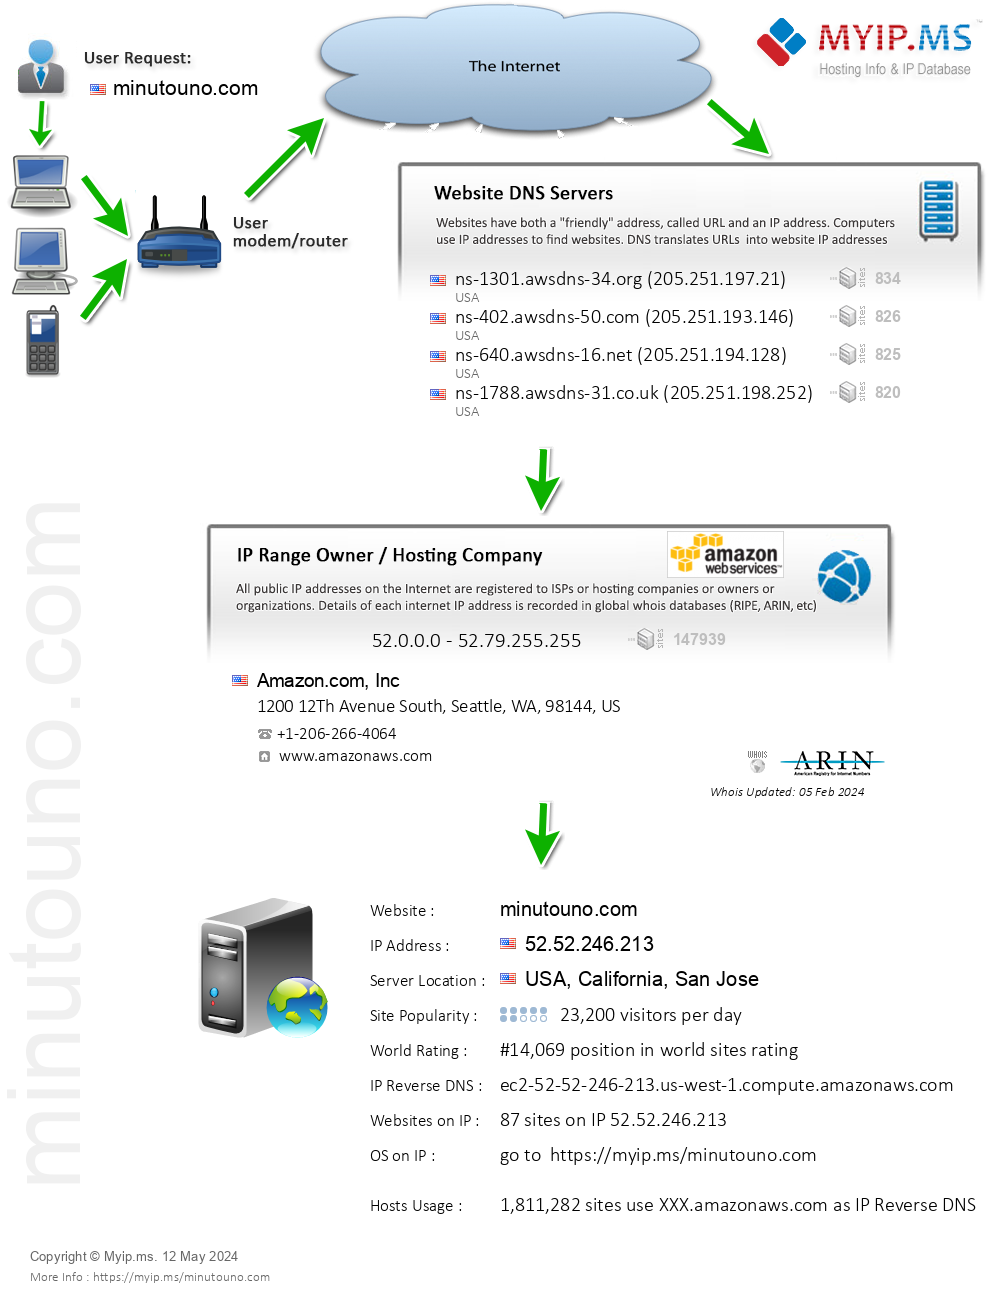 Minutouno.com - Website Hosting Visual IP Diagram